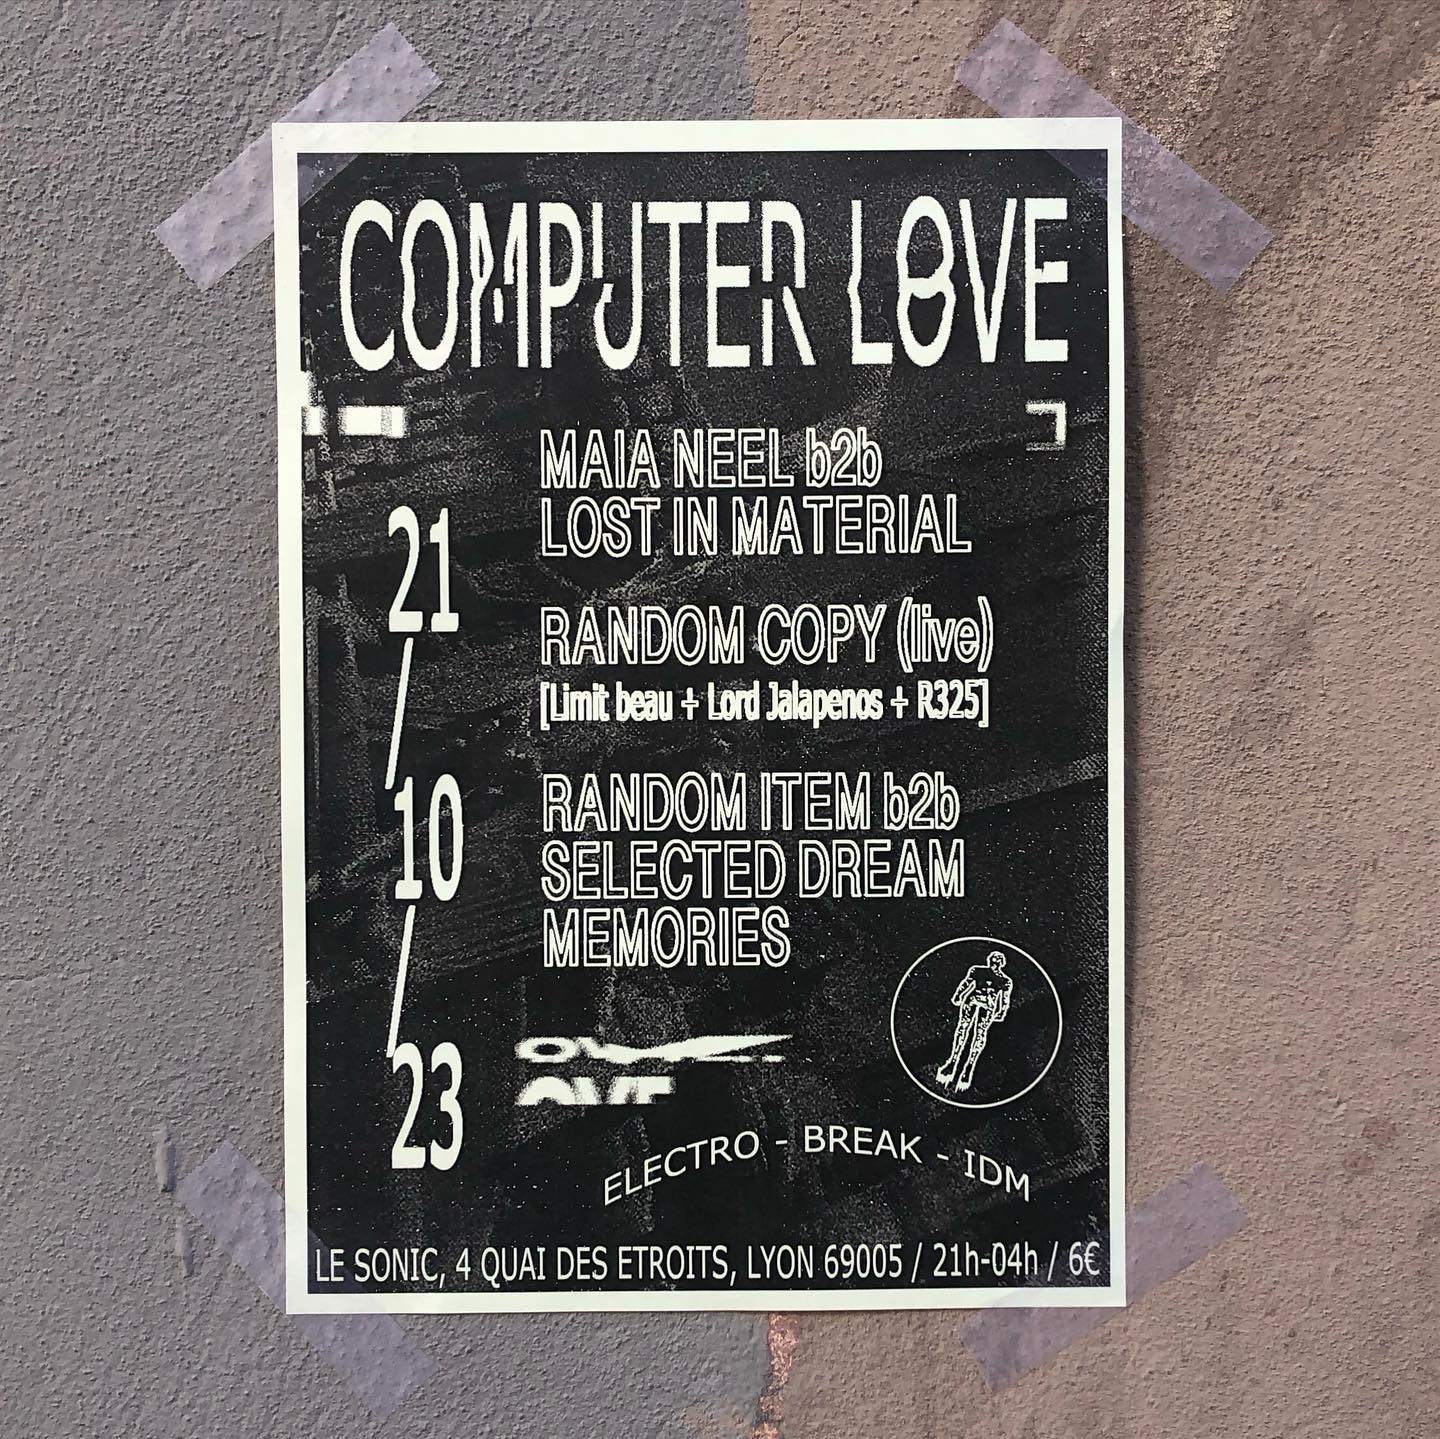 COMPUTER LOVE 3 - Página frontal